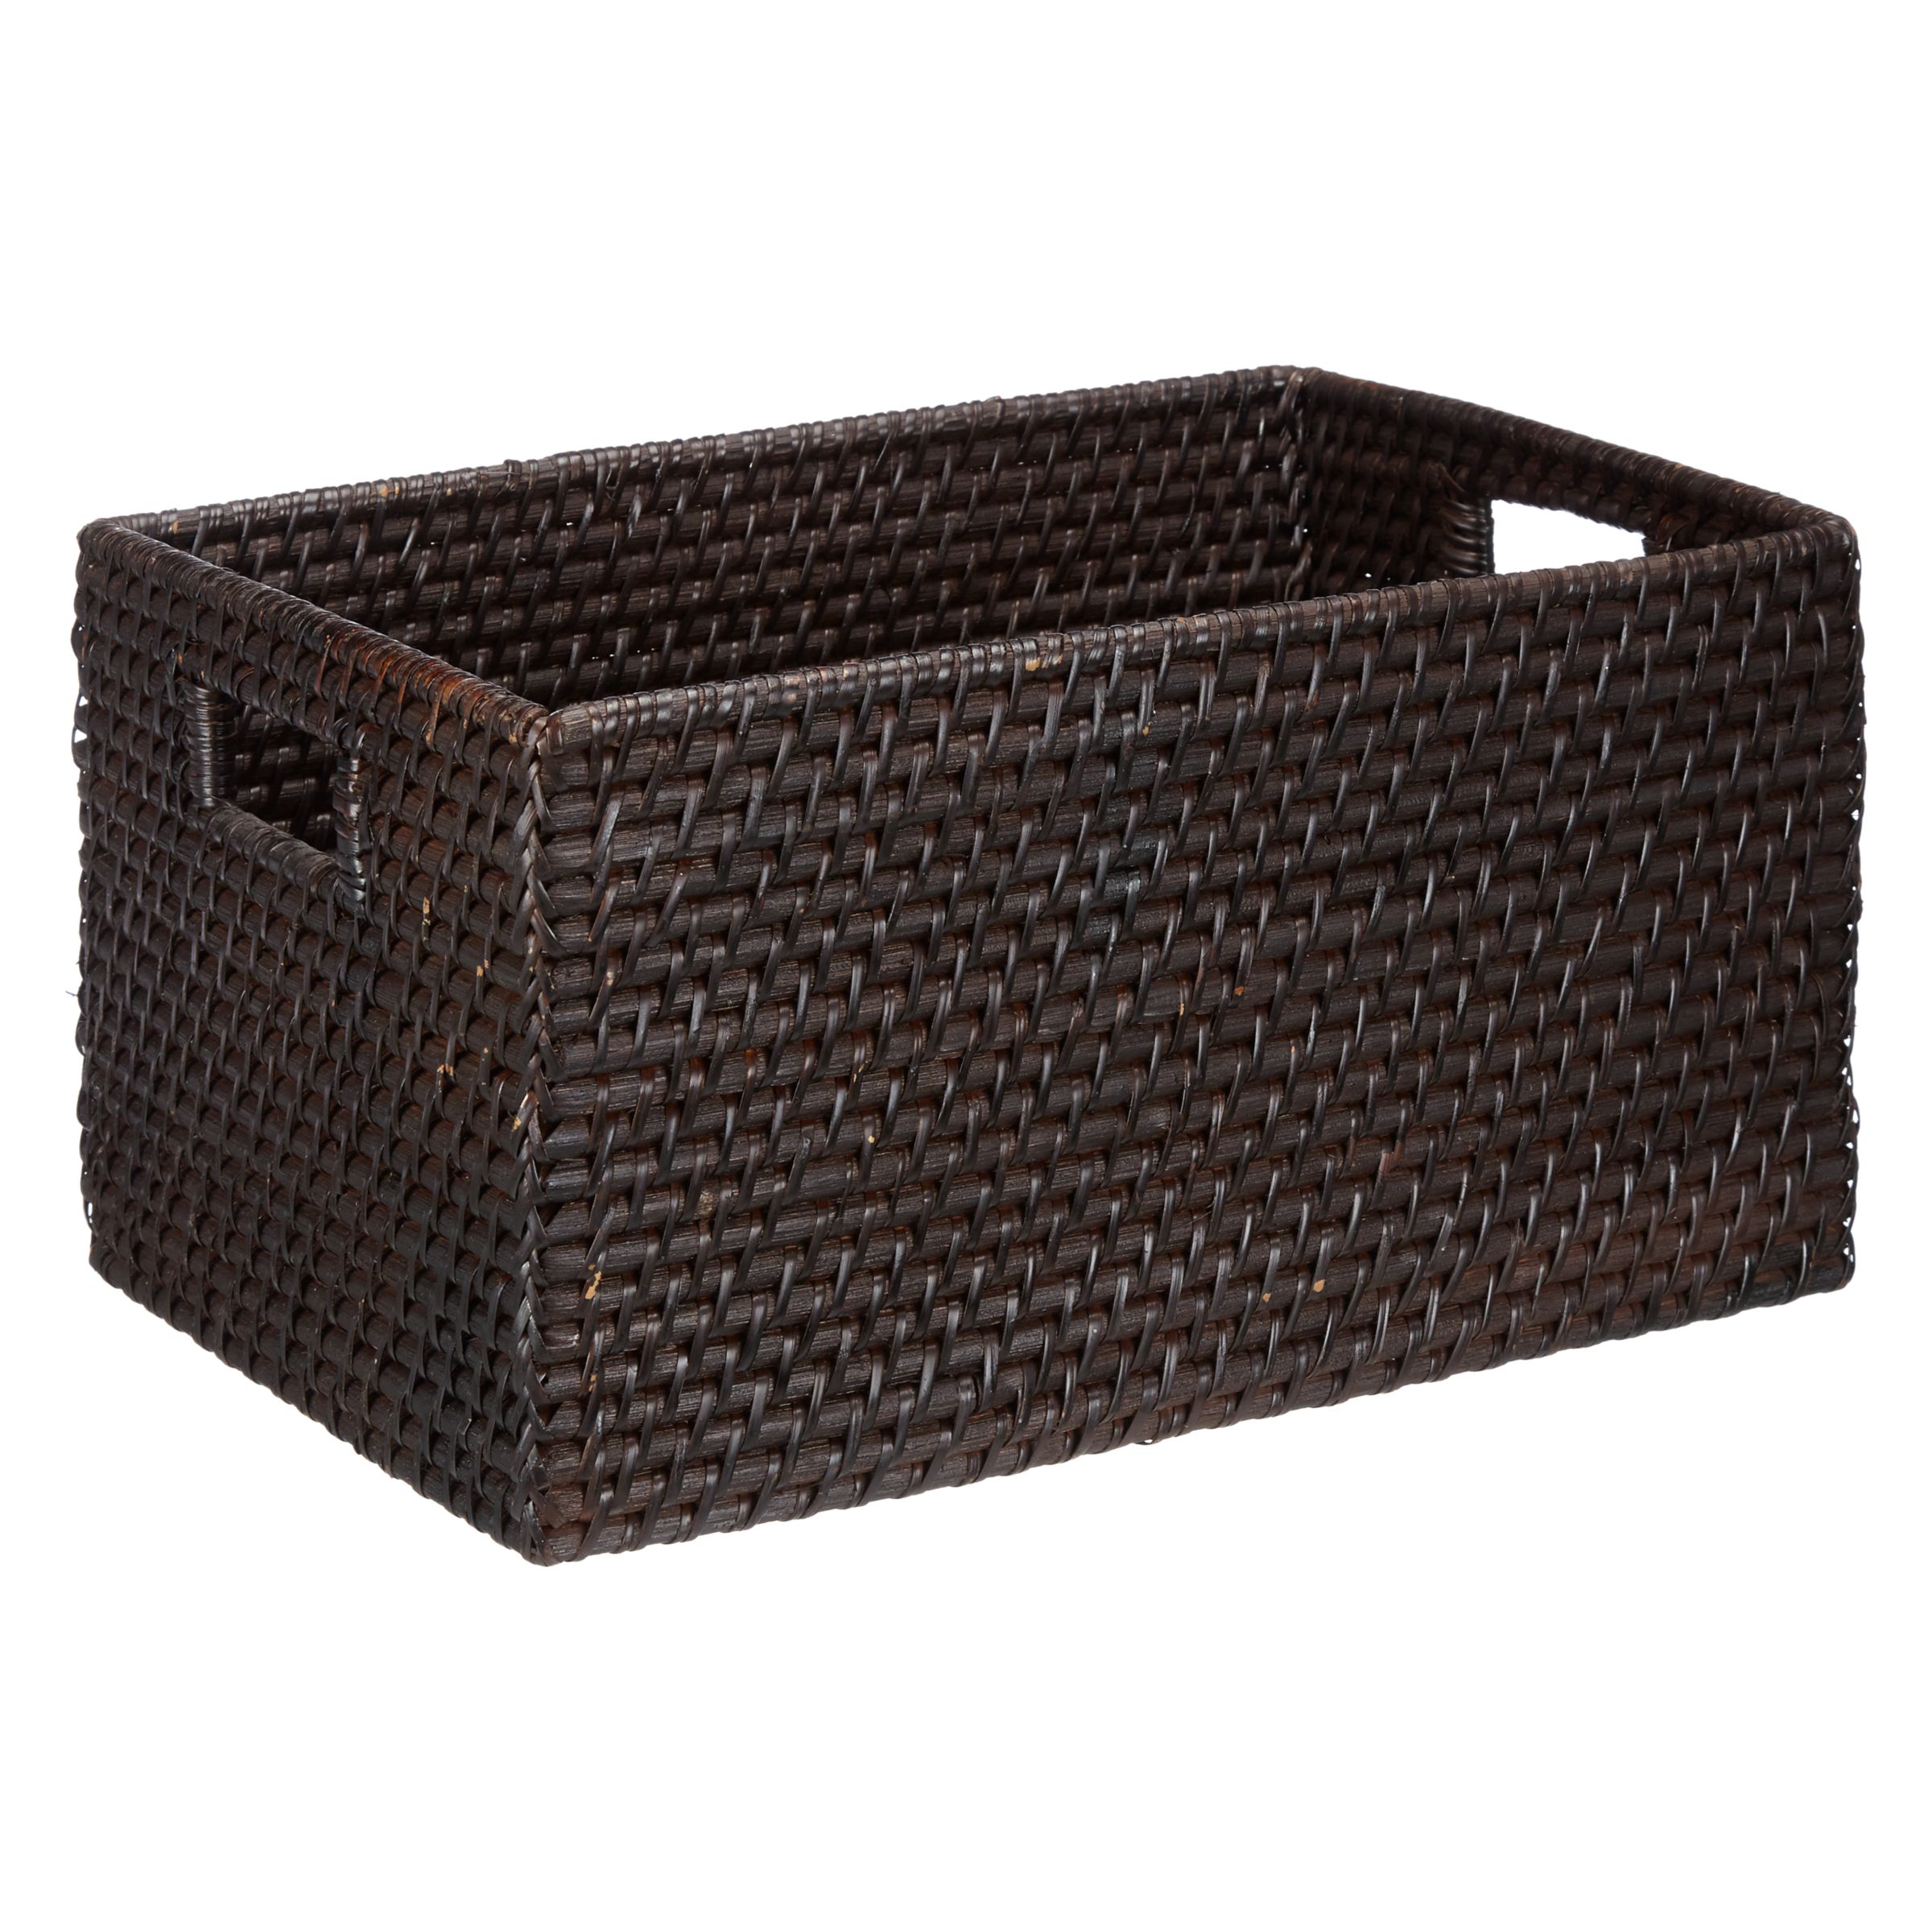 brown wicker storage baskets